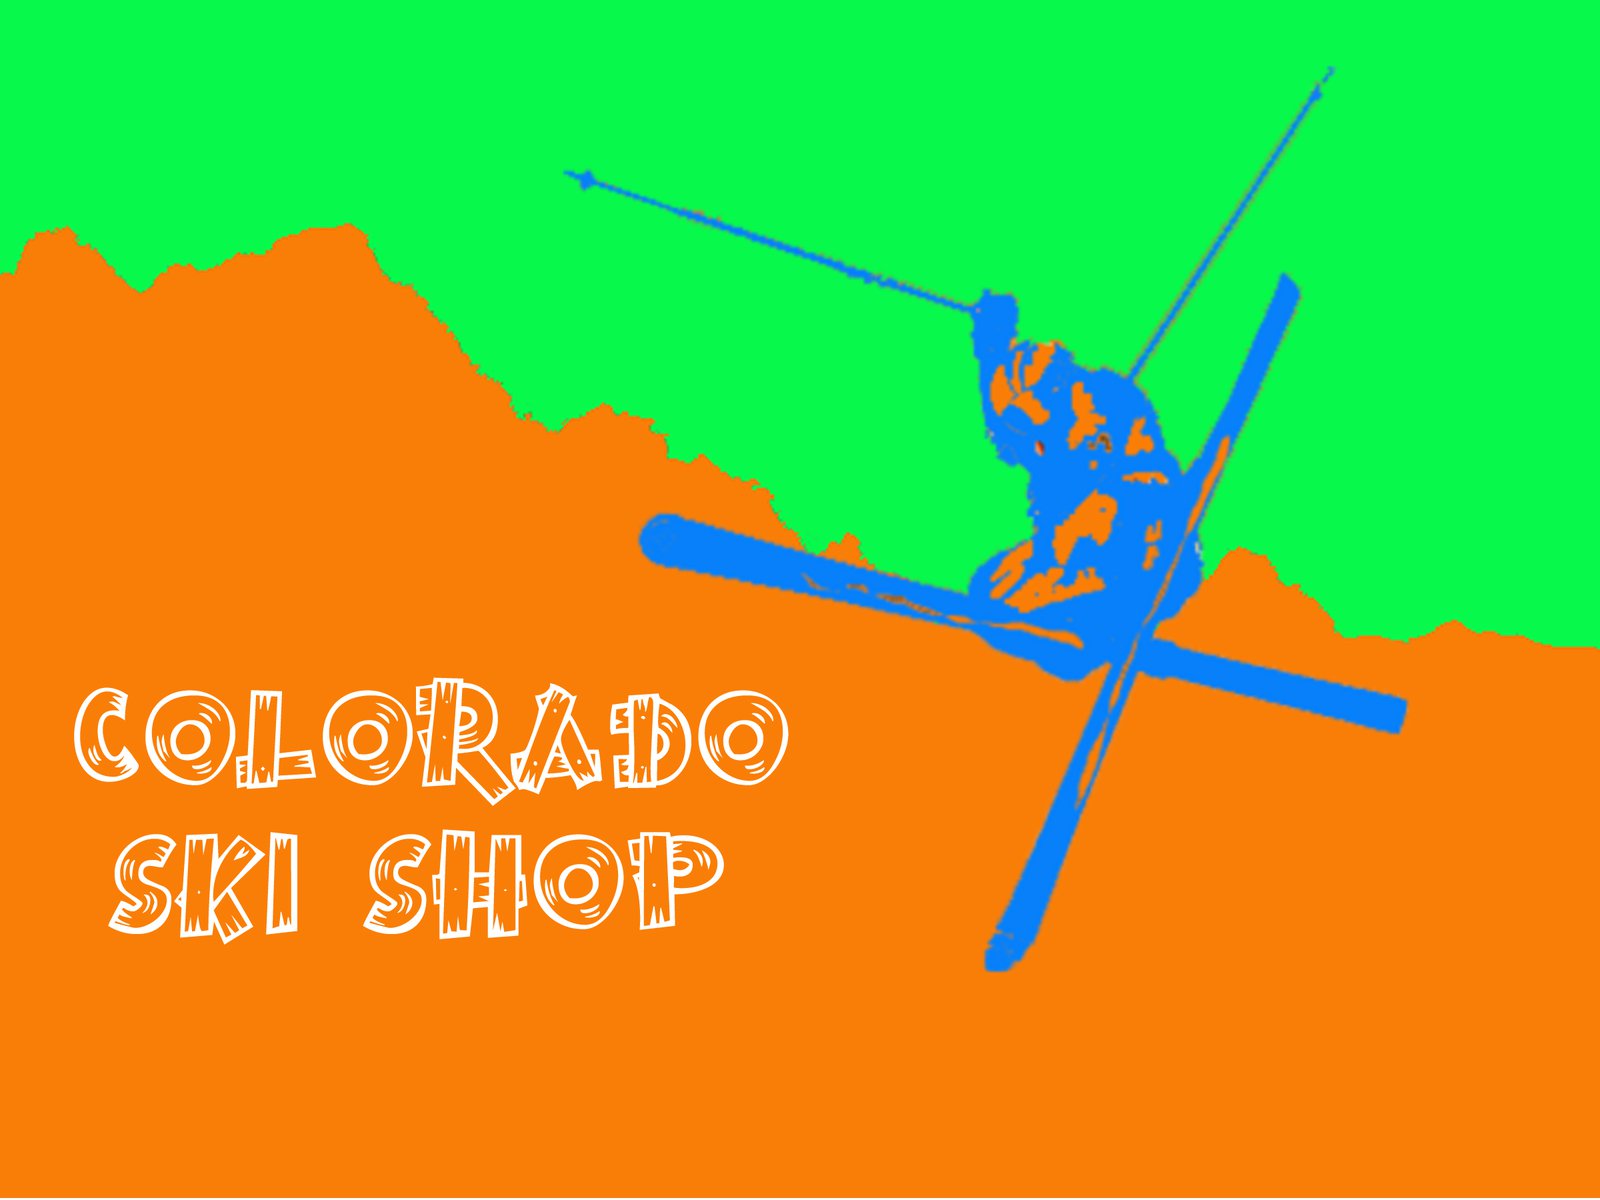 Colorado ski shop